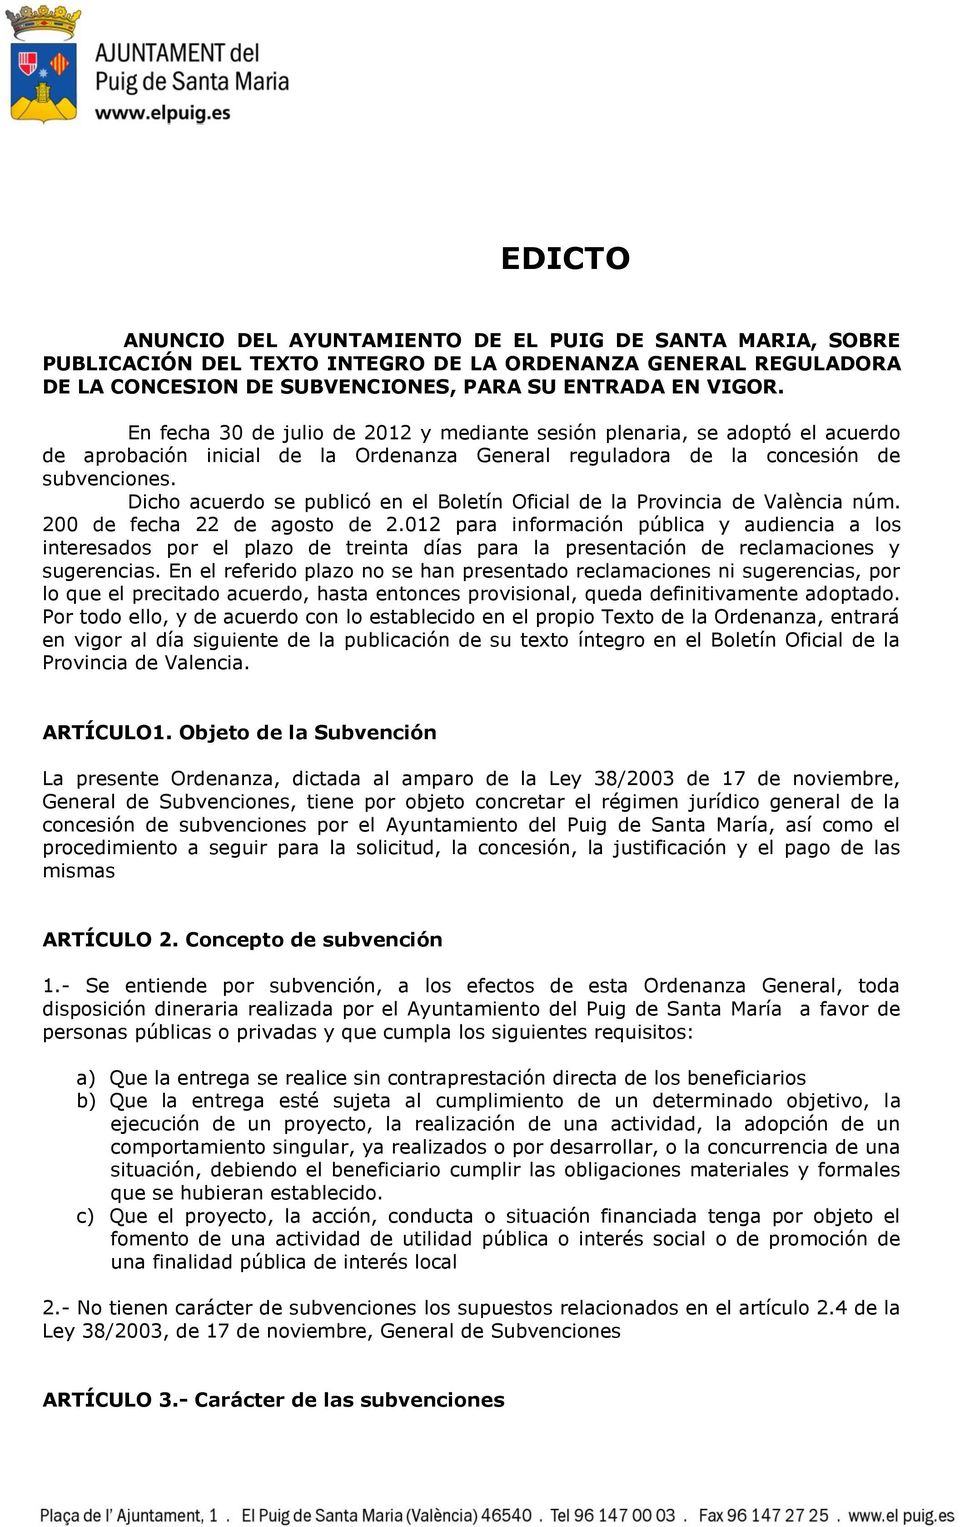 Dicho acuerdo se publicó en el Boletín Oficial de la Provincia de València núm. 200 de fecha 22 de agosto de 2.